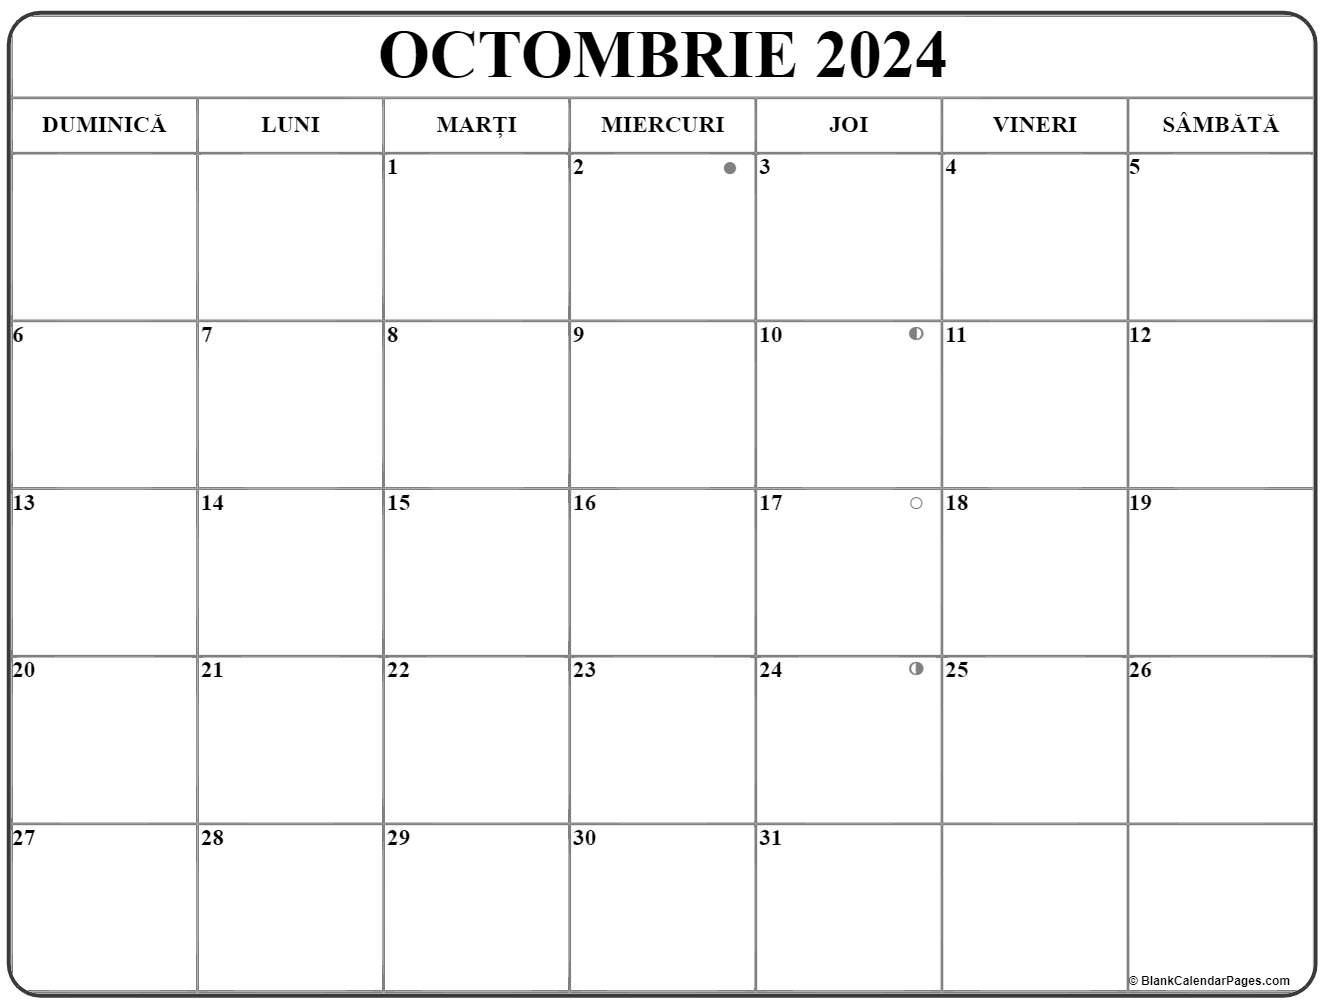 Calendarul octombrie 2024 imprimabil gratuit in romana